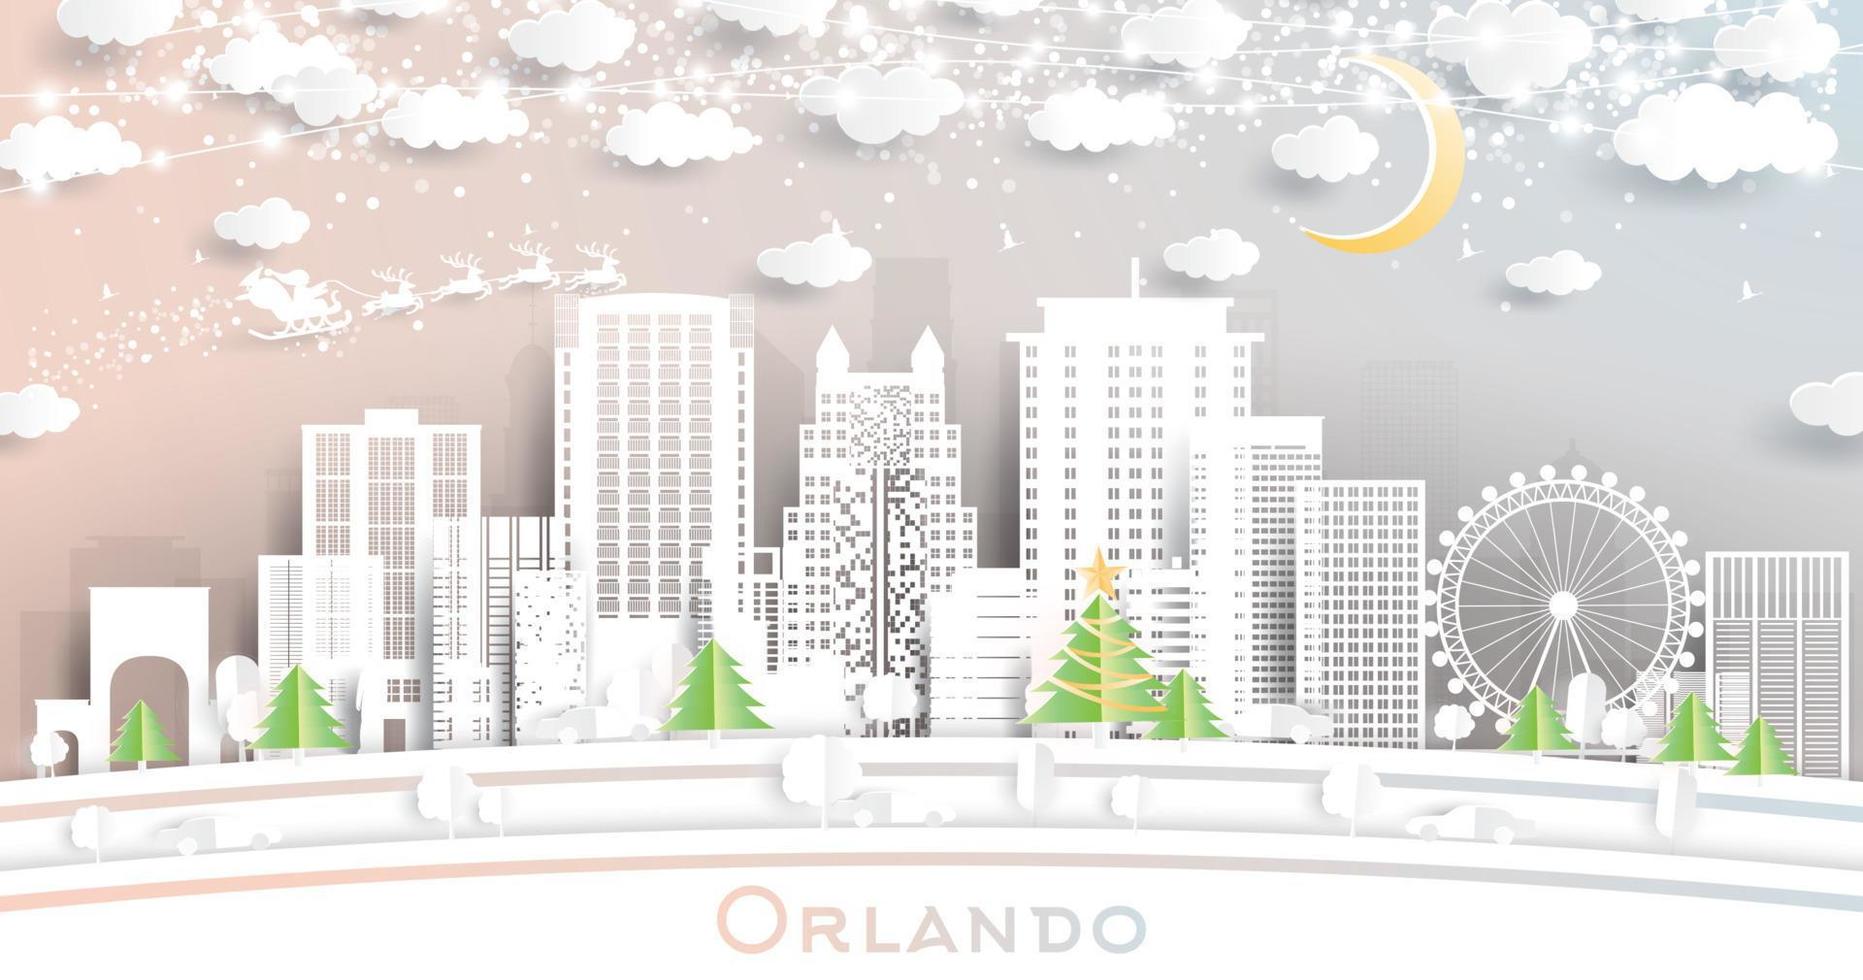 orlando florida USA stad horisont i papper skära stil med snöflingor, måne och neon krans. vektor